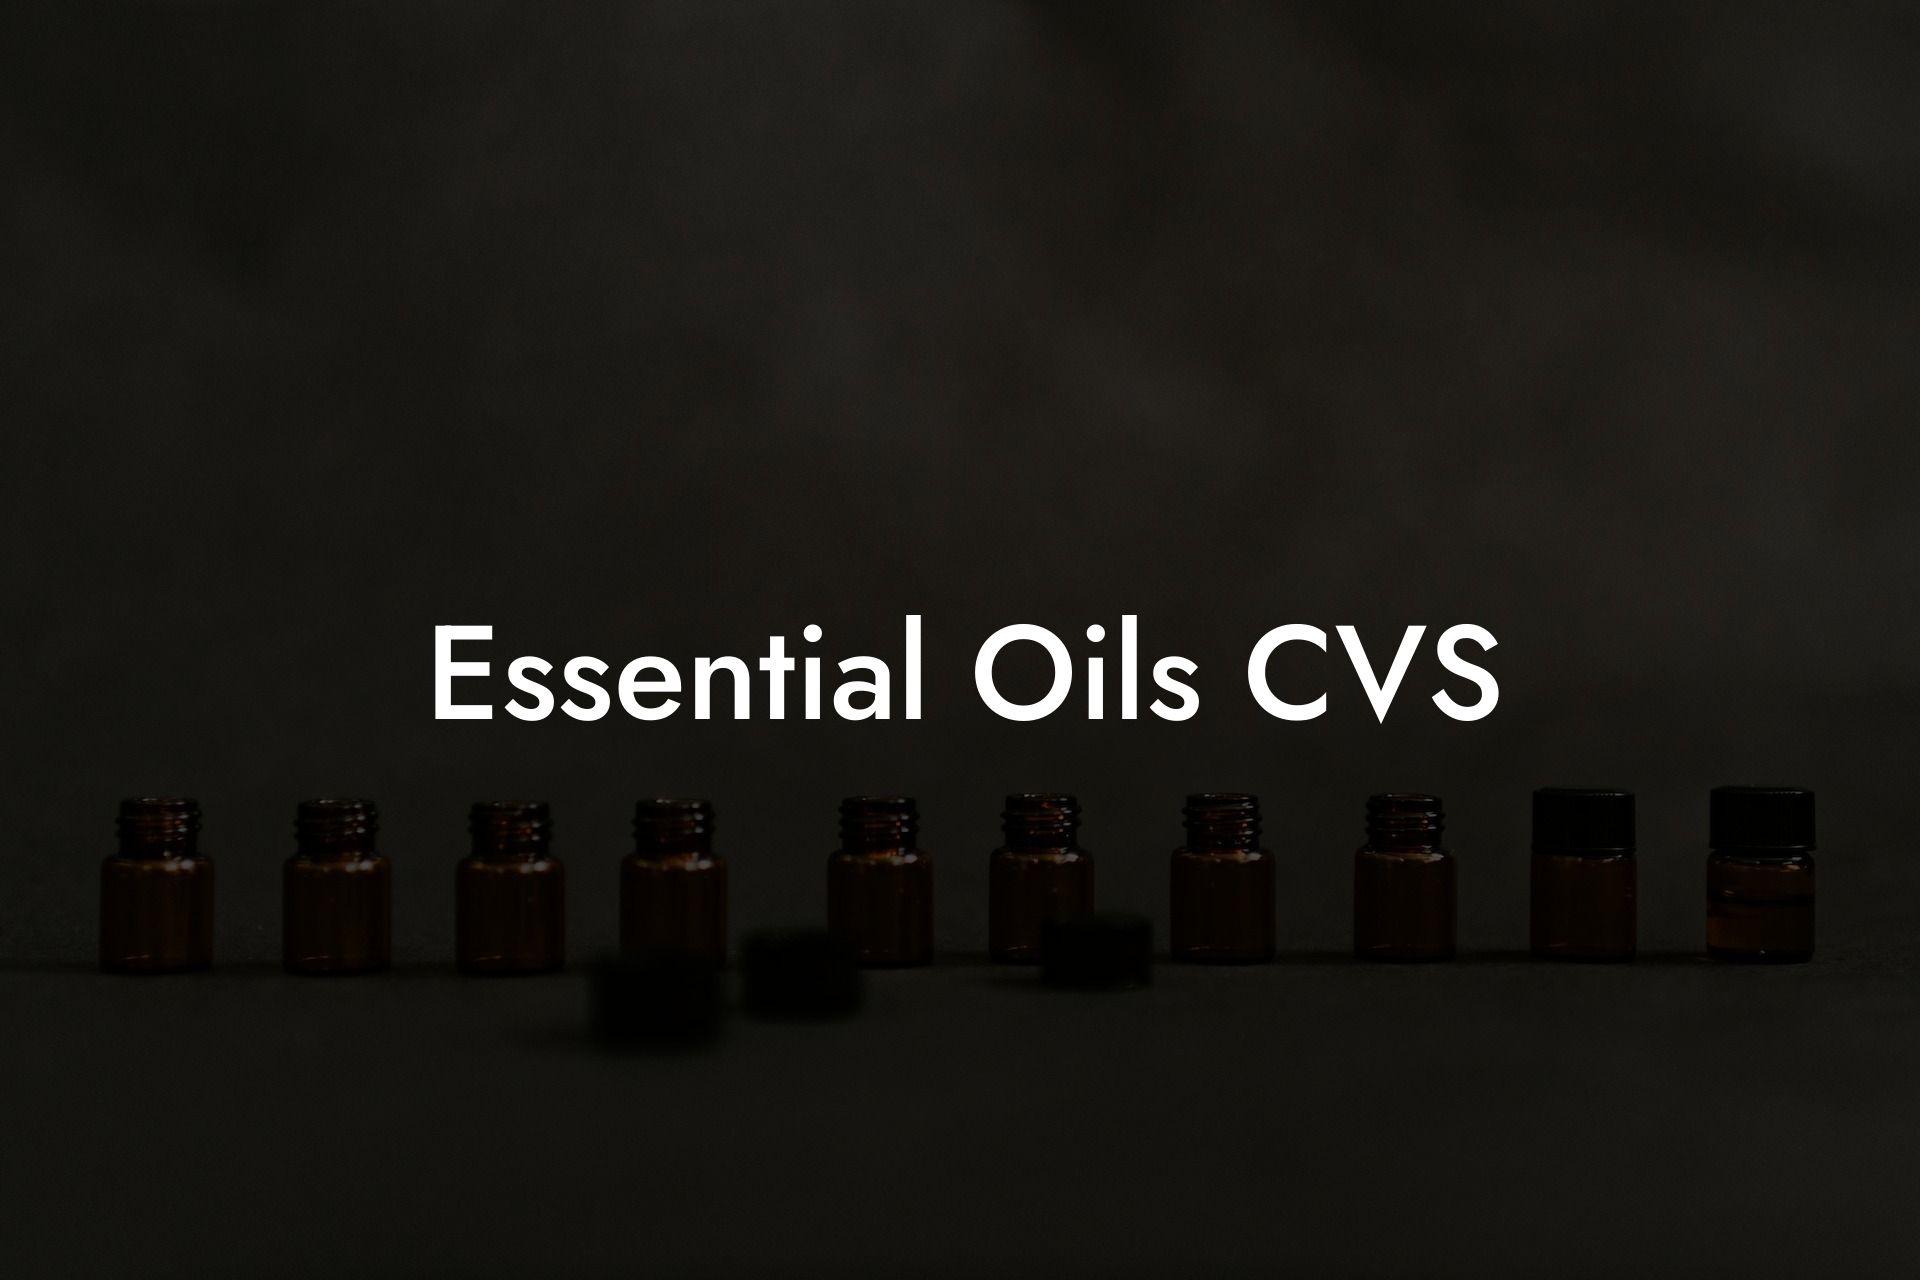 Essential Oils CVS